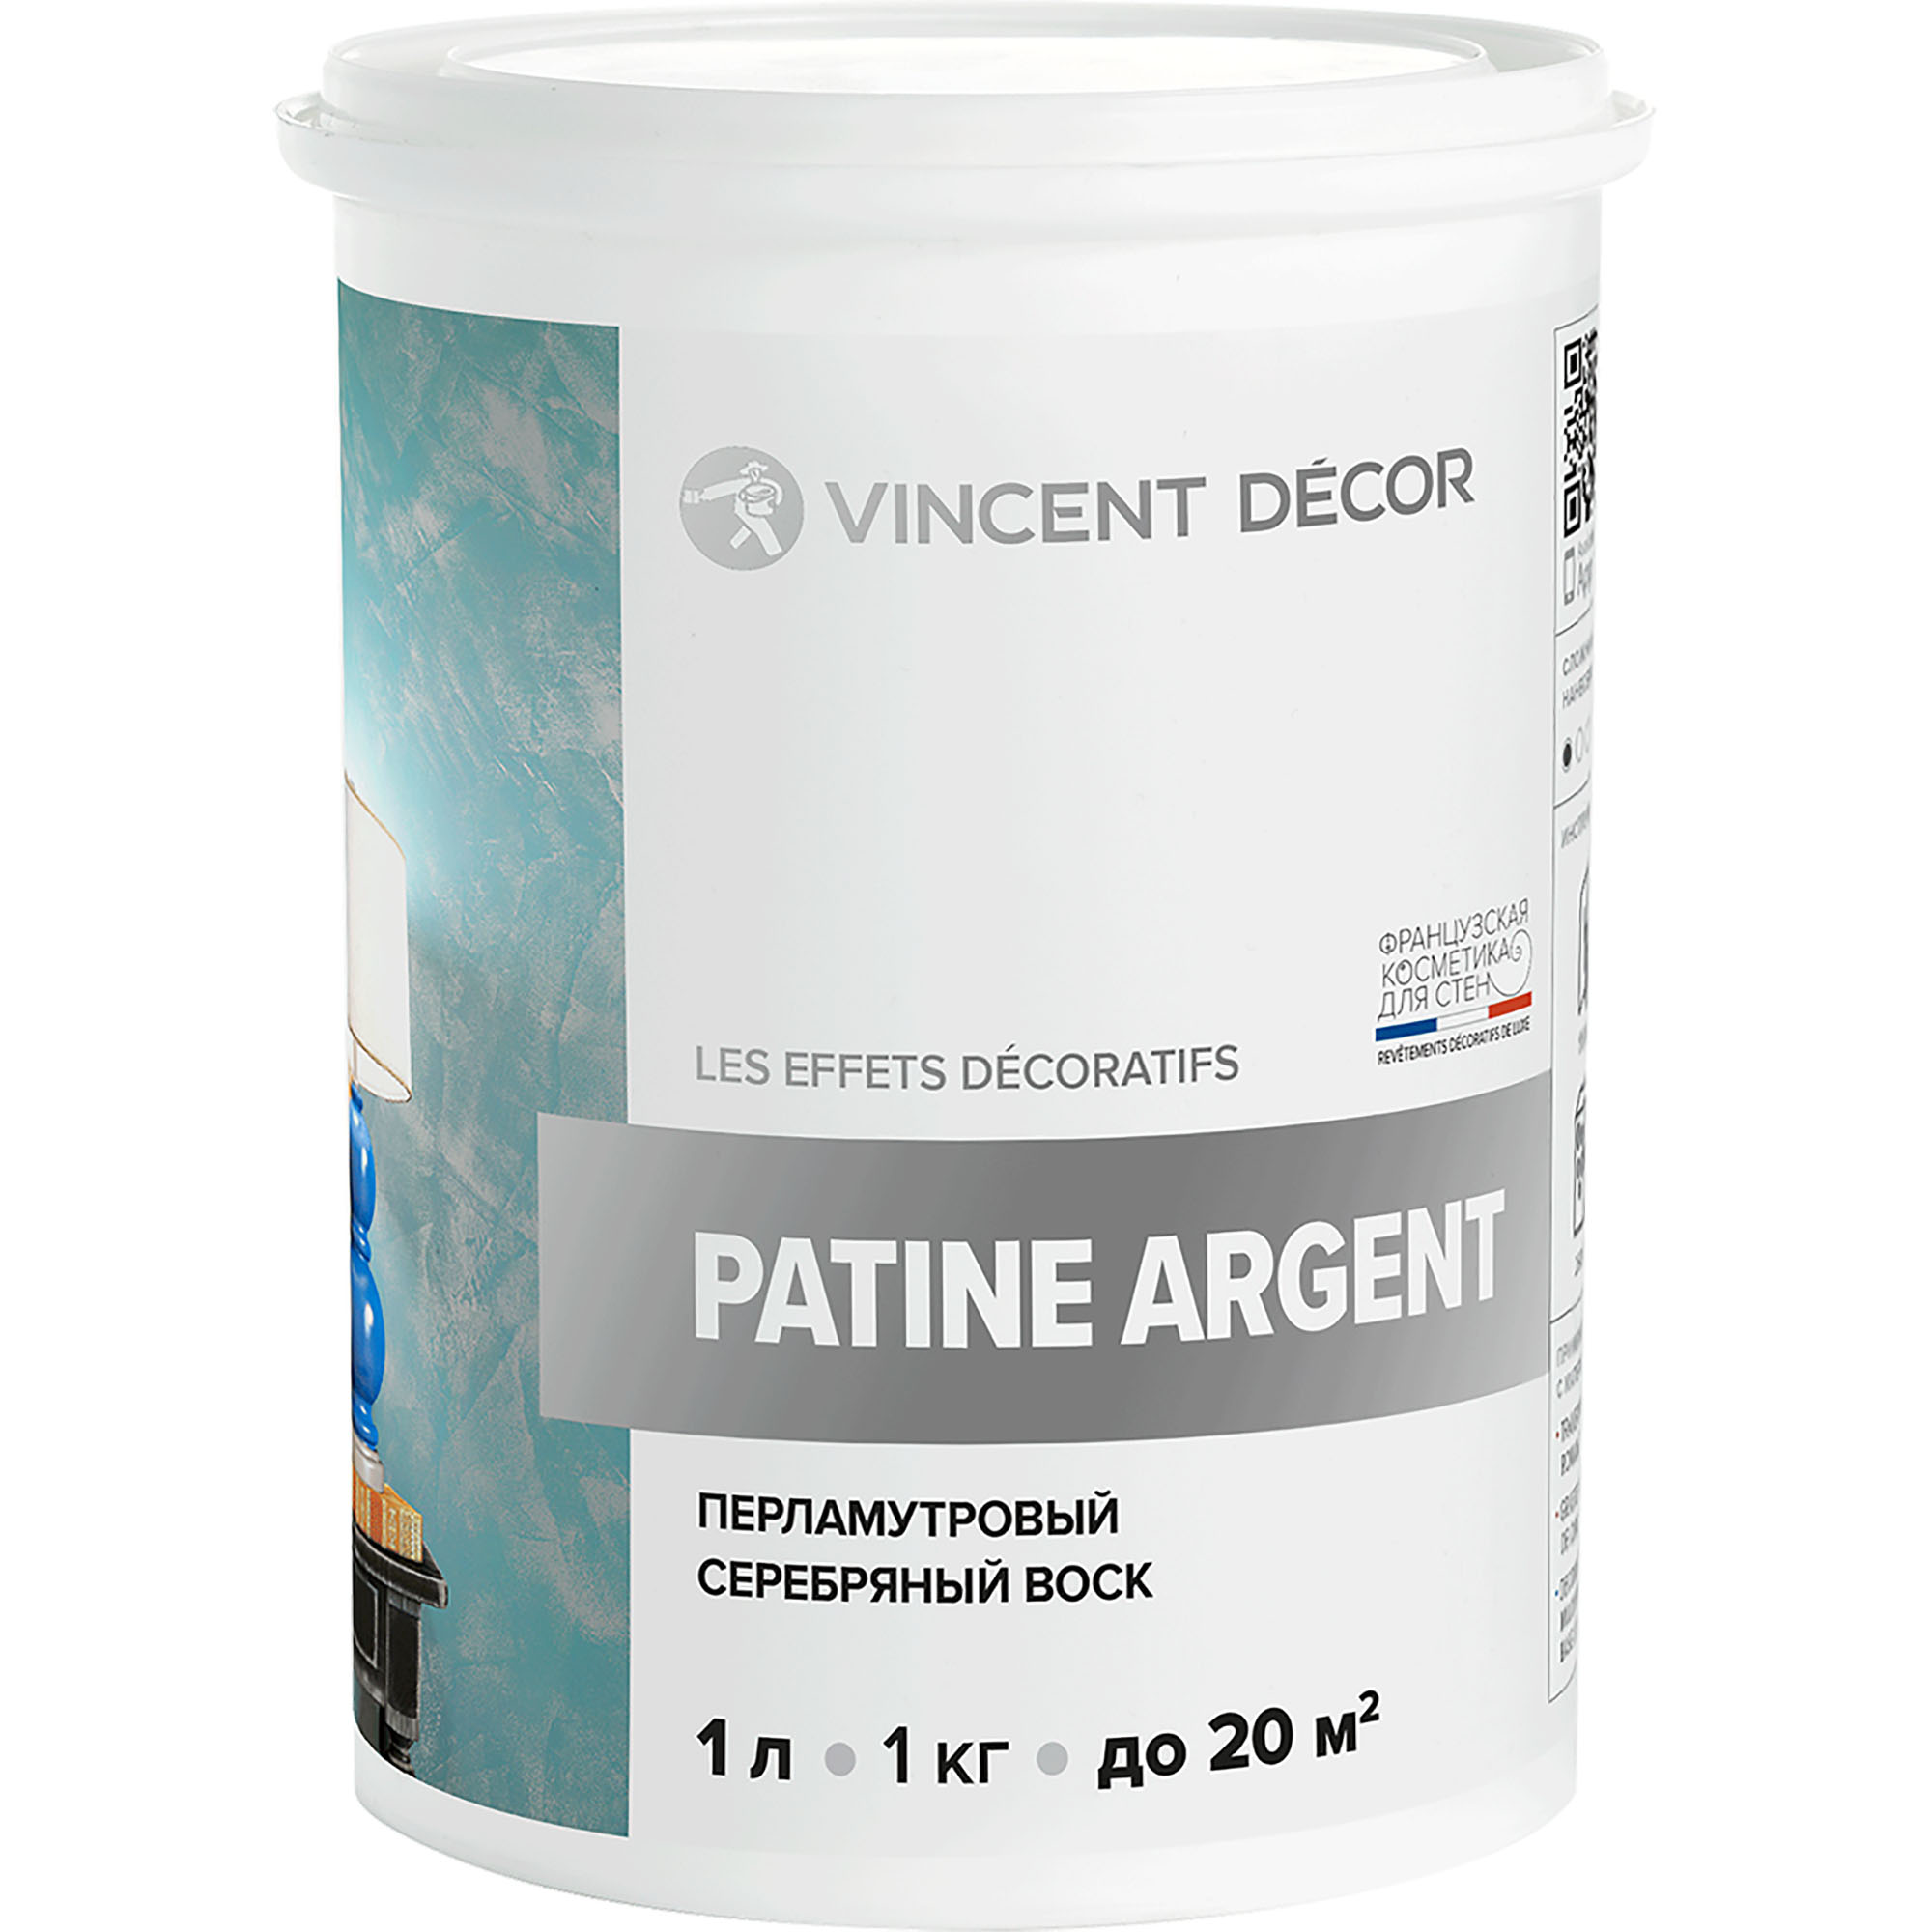 Перламутровый серебряный воск Vincent Decor Patine Argent для декоративных покрытий 1 кг стразы термоклеевые с голографией ширина 15 мм 4 5 ± 0 5 м серебряный